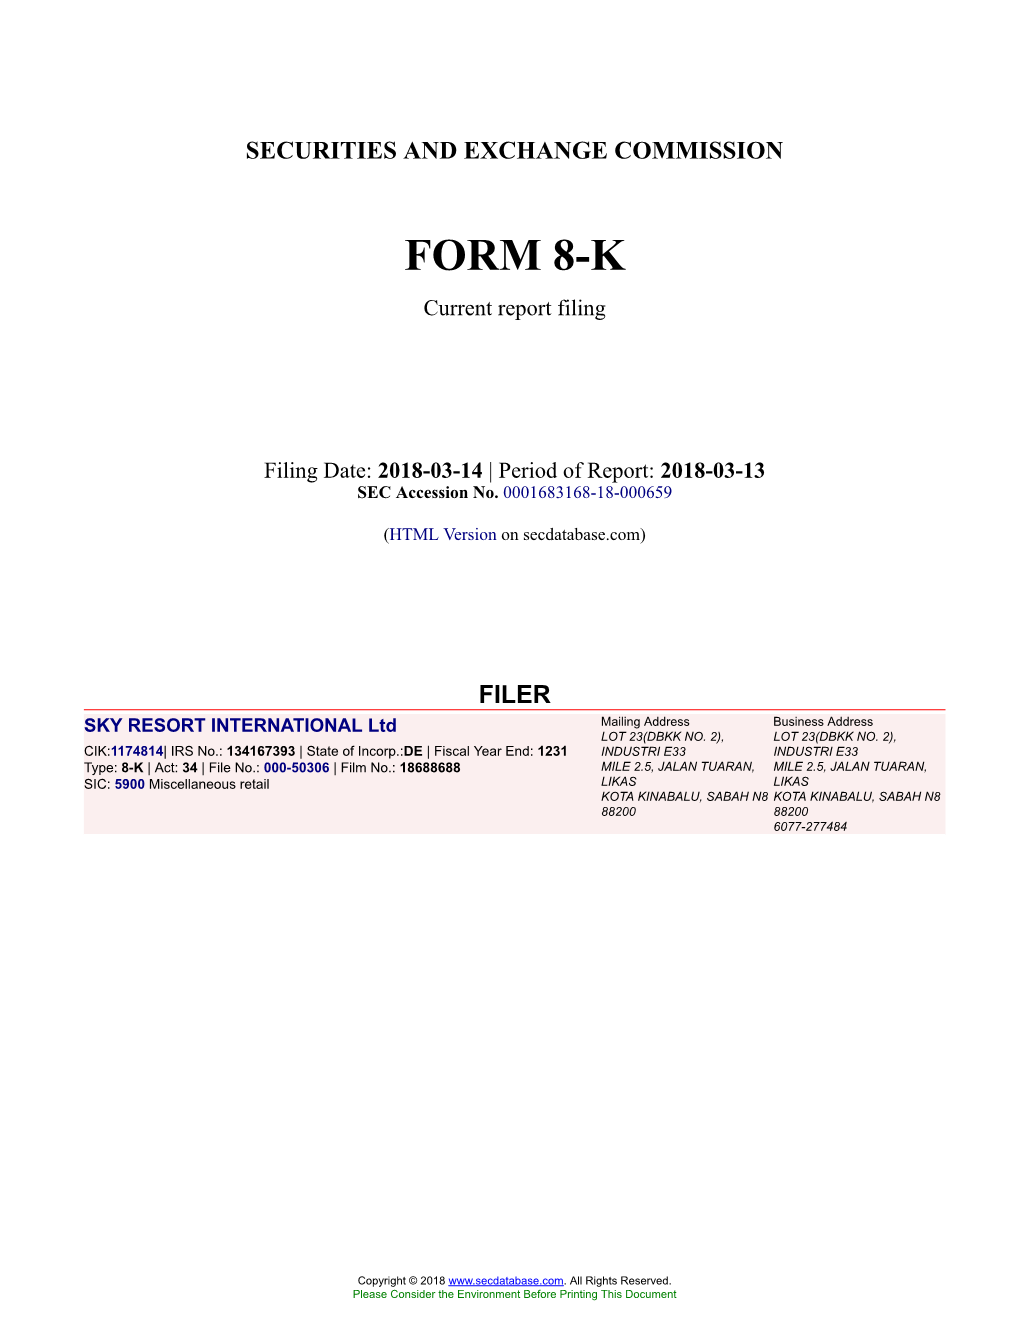 SKY RESORT INTERNATIONAL Ltd Form 8-K Current Report Filed 2018